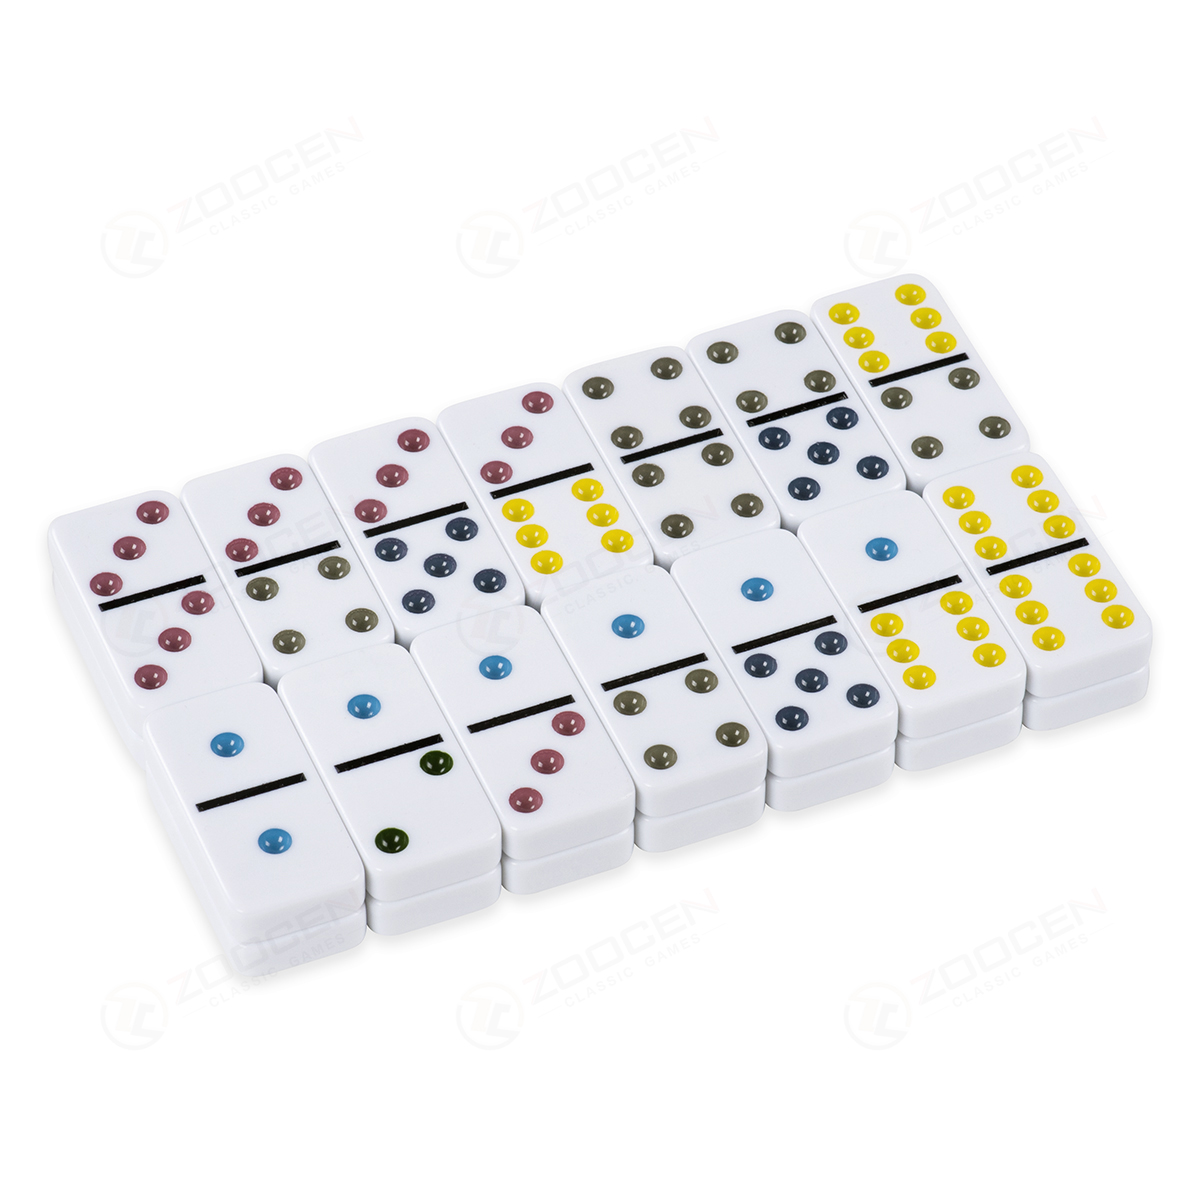 硬纸盒包装双六白彩多米诺套装 Double 6 Color Dot Dominoes Set详情2